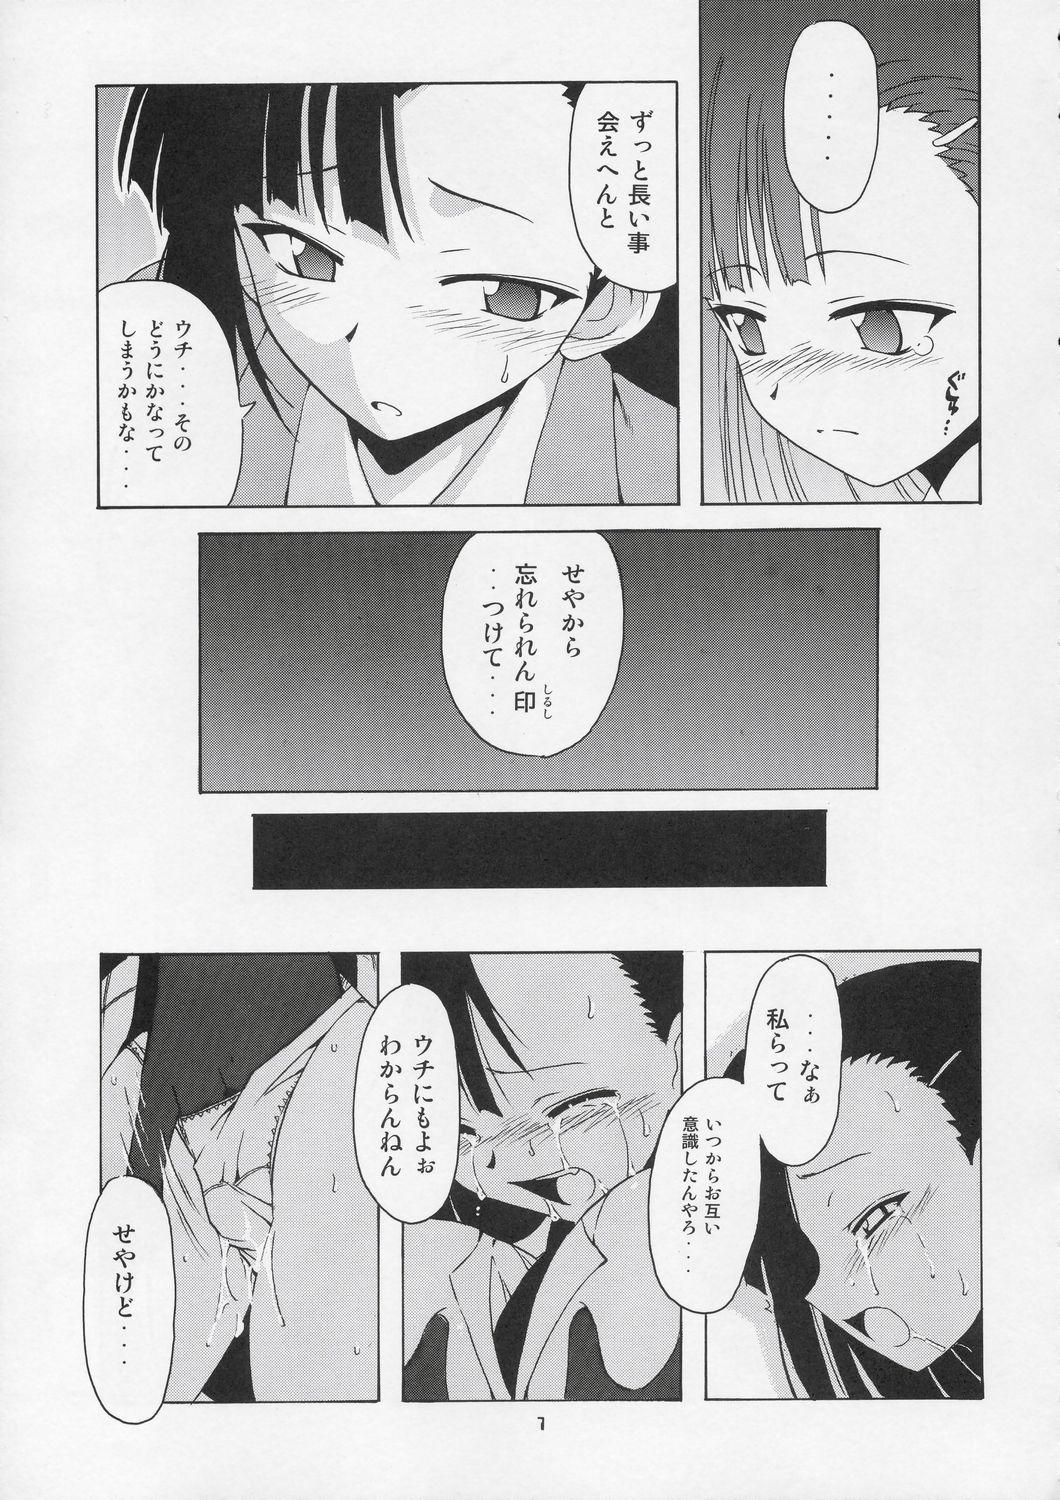 Gayemo Setsuna no Kokyou - Mahou sensei negima Gang Bang - Page 7